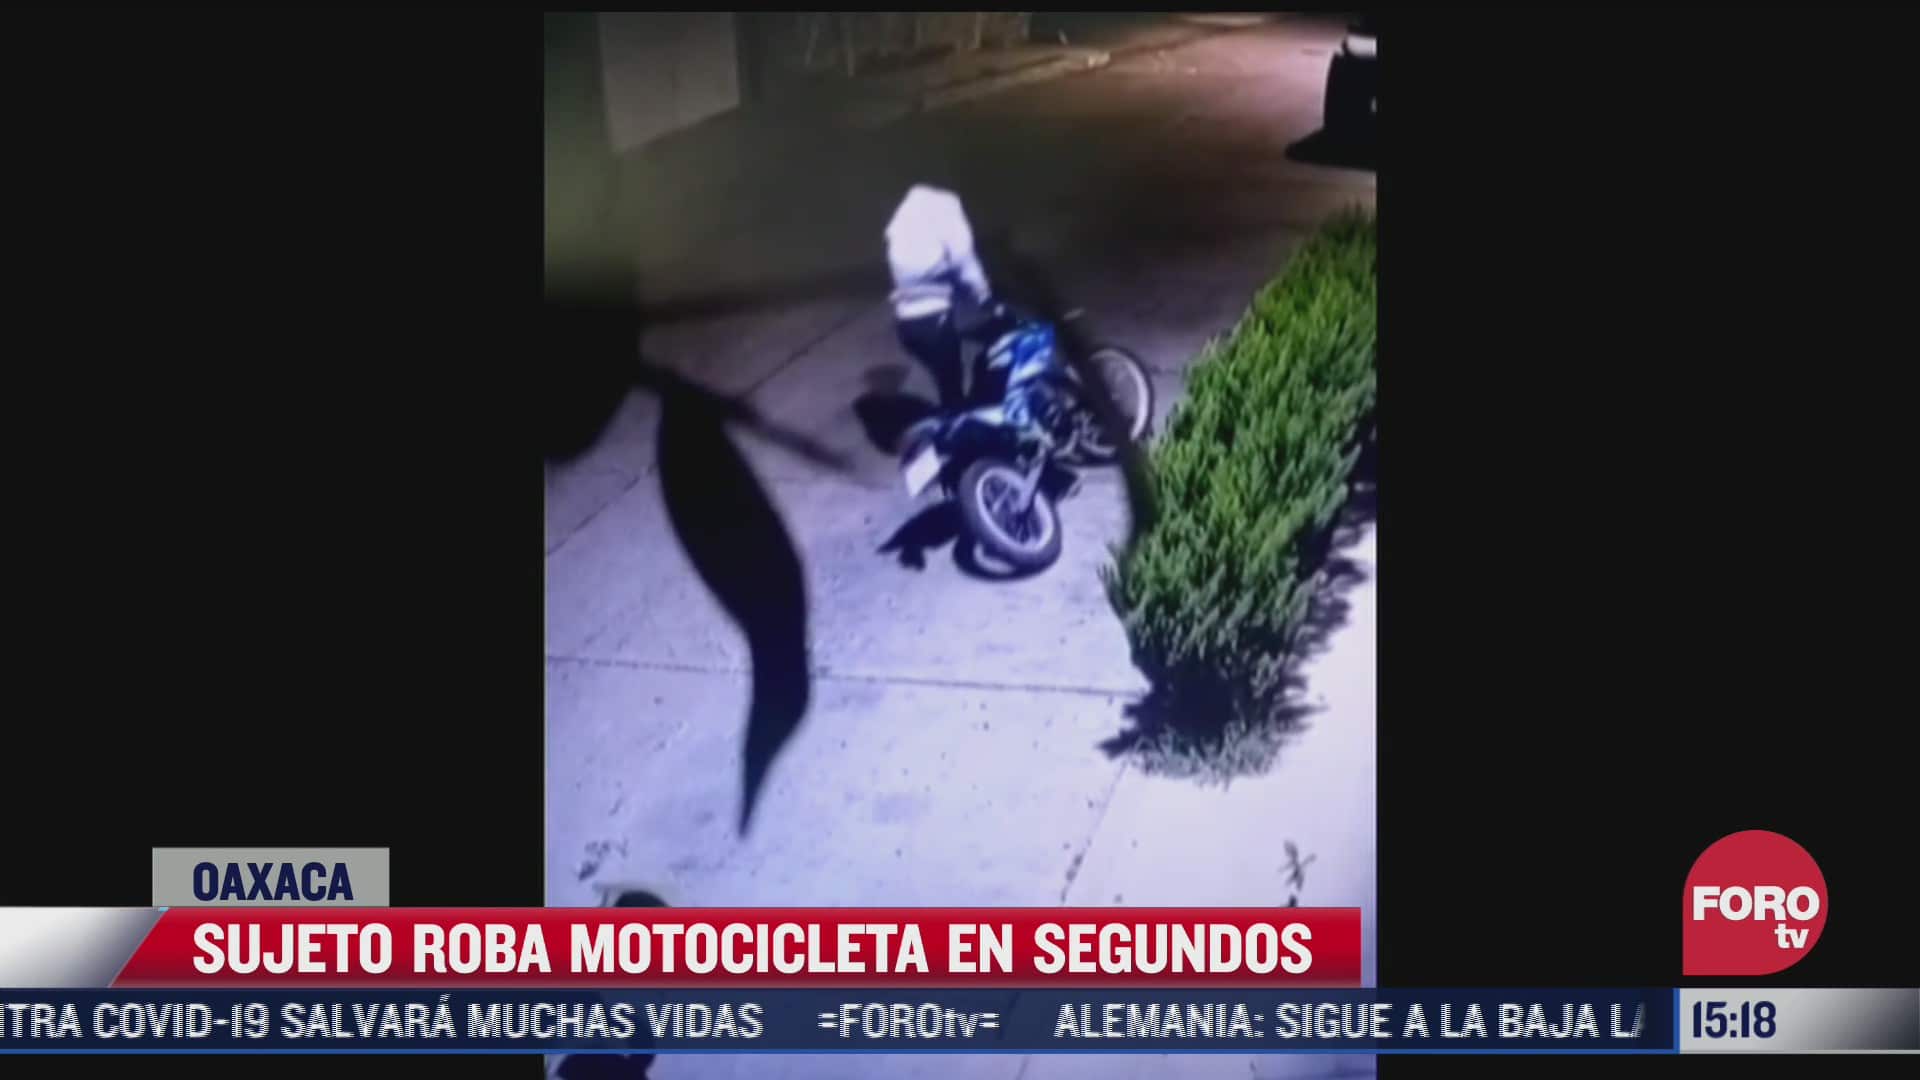 sujeto roba motocicleta en segundos en oaxaca